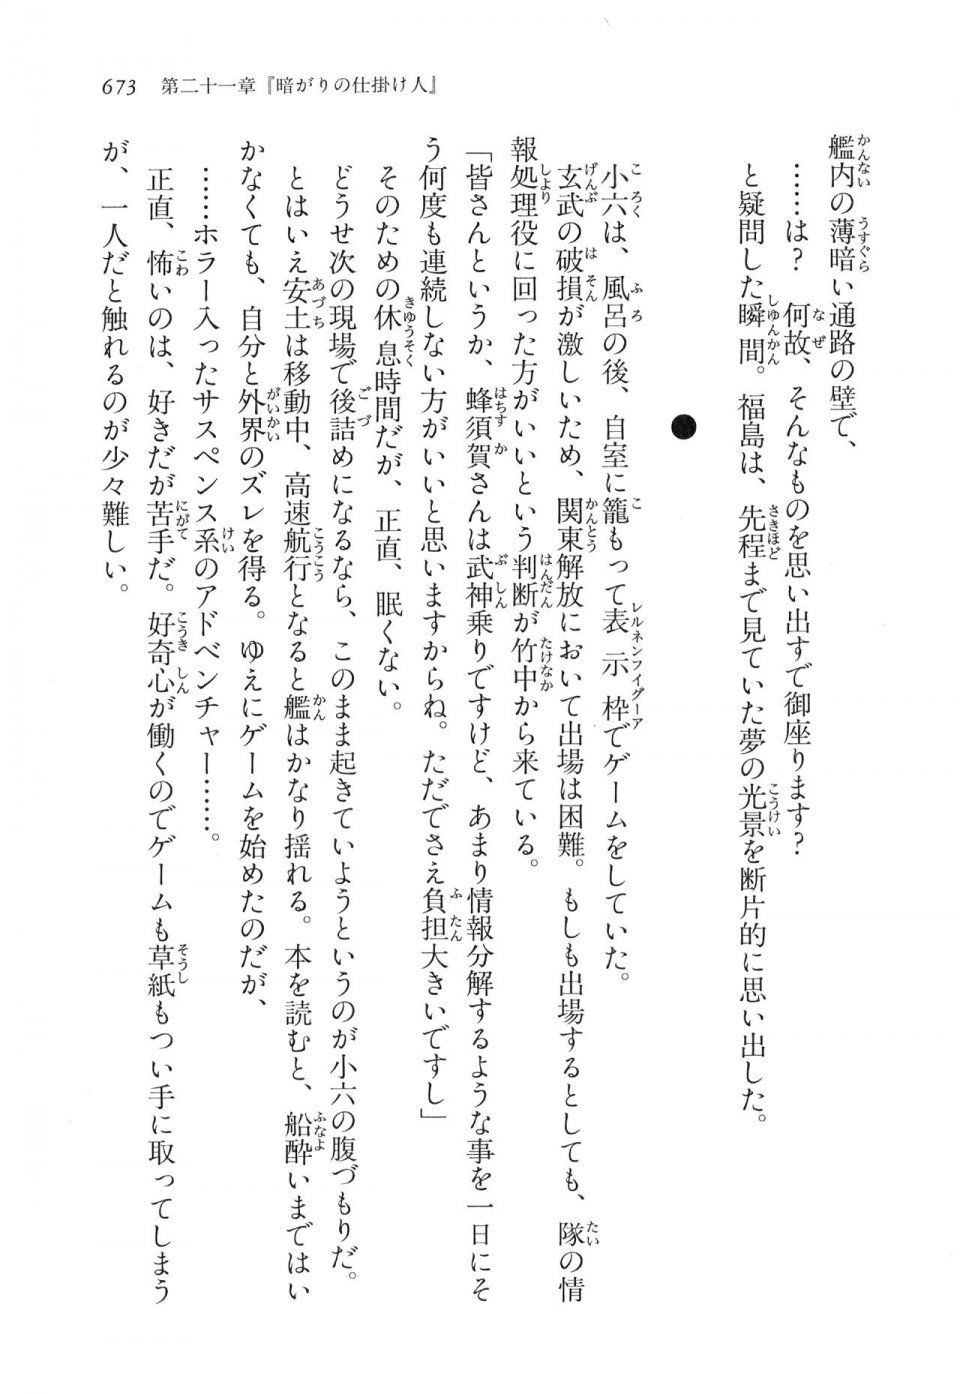 Kyoukai Senjou no Horizon LN Vol 16(7A) - Photo #673